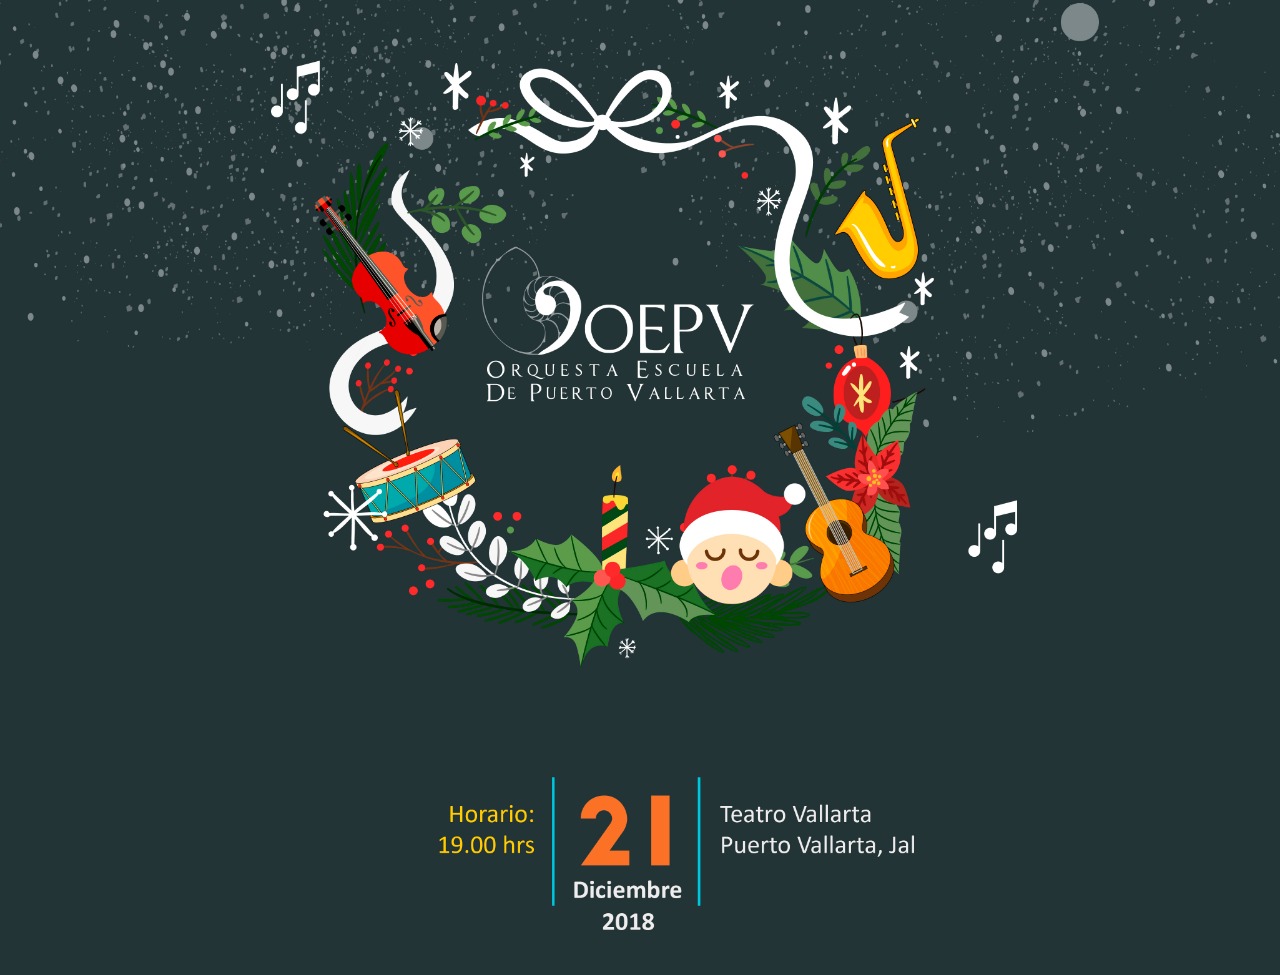 La OEPV anuncia su Concierto de Navidad